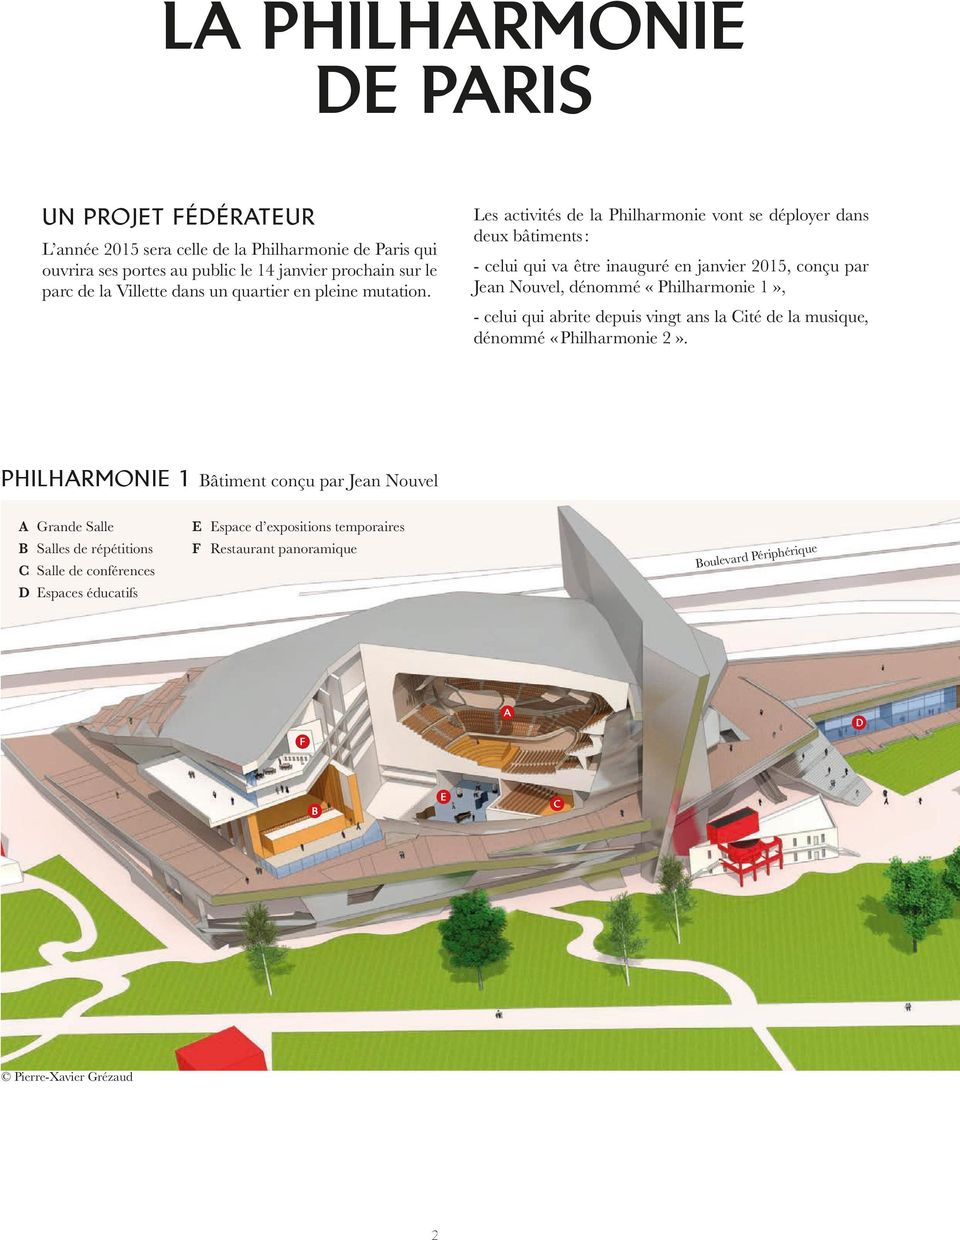 Les activités de la Philharmonie vont se déployer dans deux bâtiments : - celui qui va être inauguré en janvier 2015, conçu par Jean Nouvel, dénommé «Philharmonie 1», - celui qui